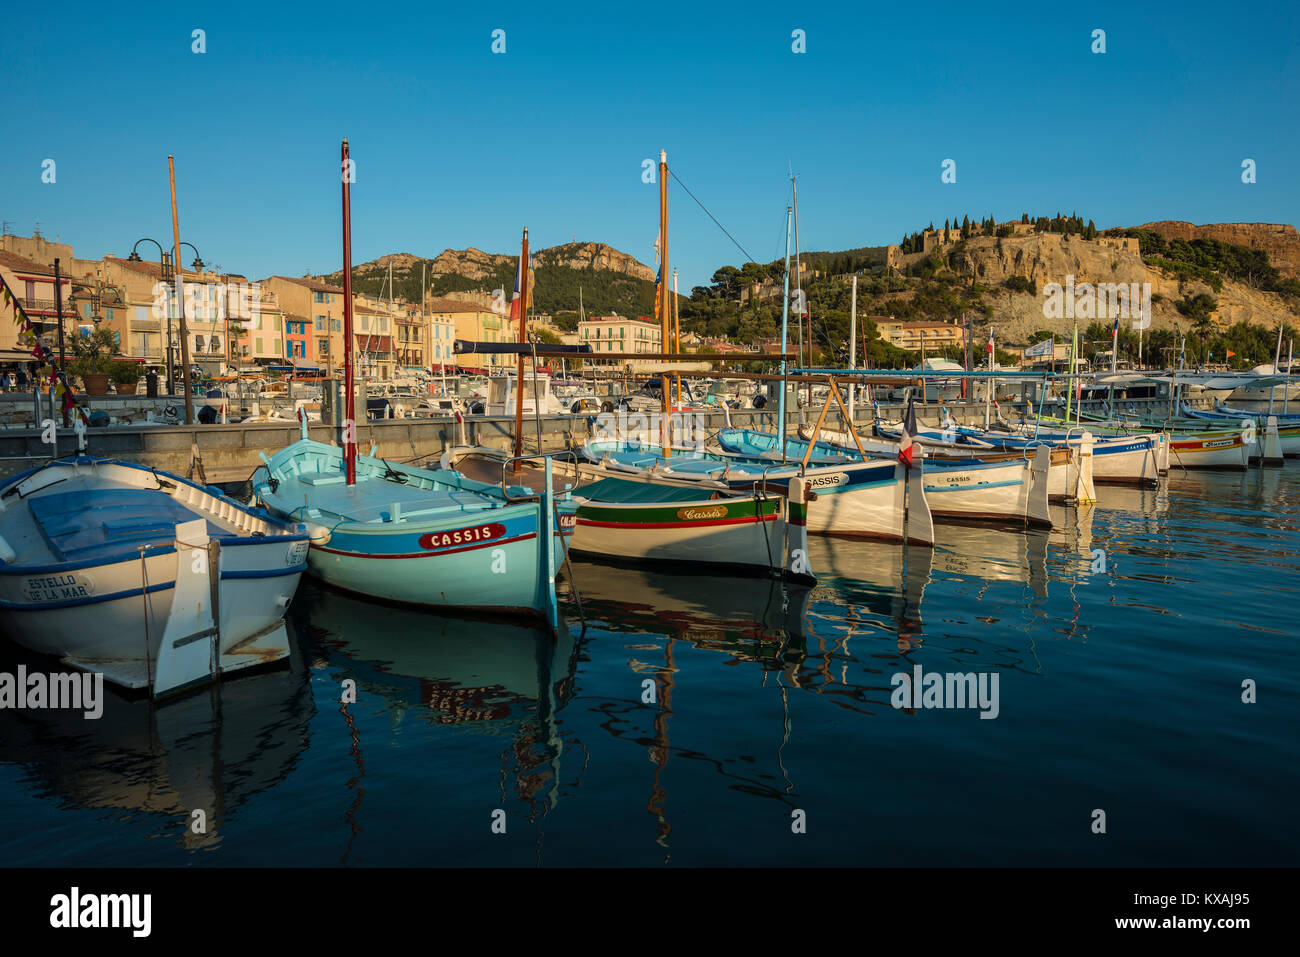 Boote im Hafen, Cassis, Bouches-du-Rhône der Region Provence-Alpes-Côte d'Azur, Südfrankreich, Frankreich Stockfoto